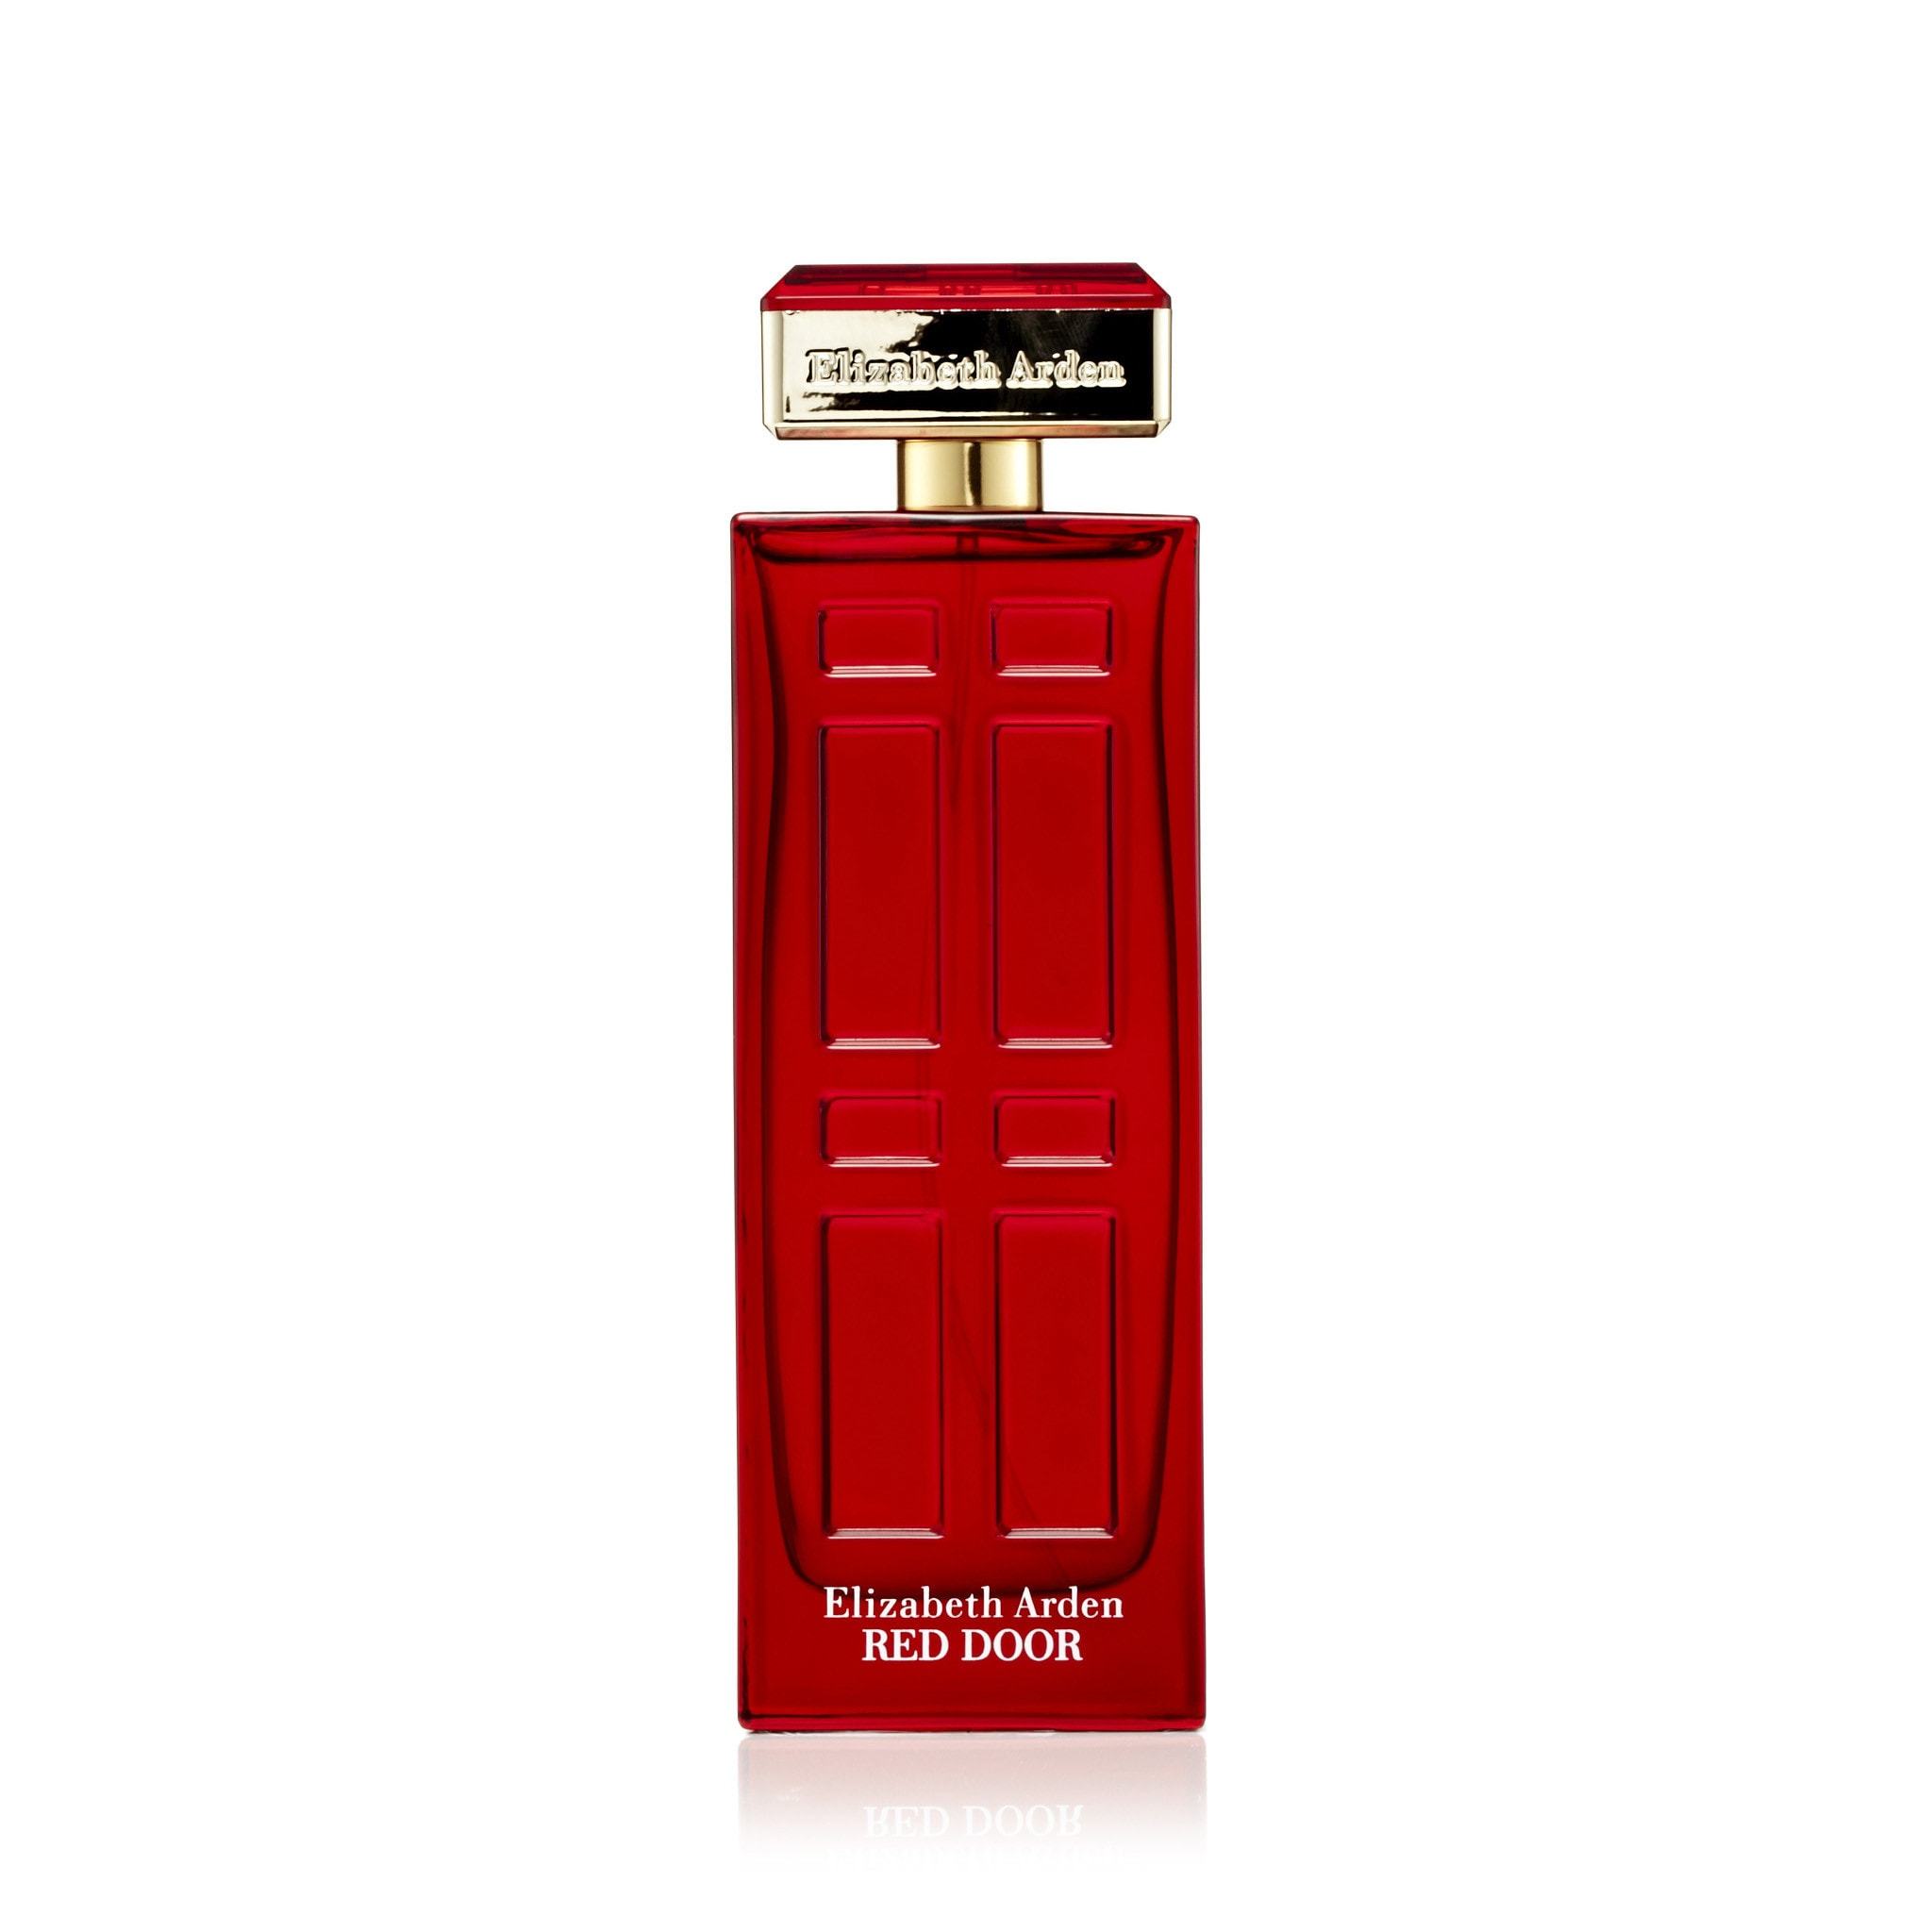 Tegne have Bare gør Red Door EDT for Women by Elizabeth Arden – Fragrance Outlet